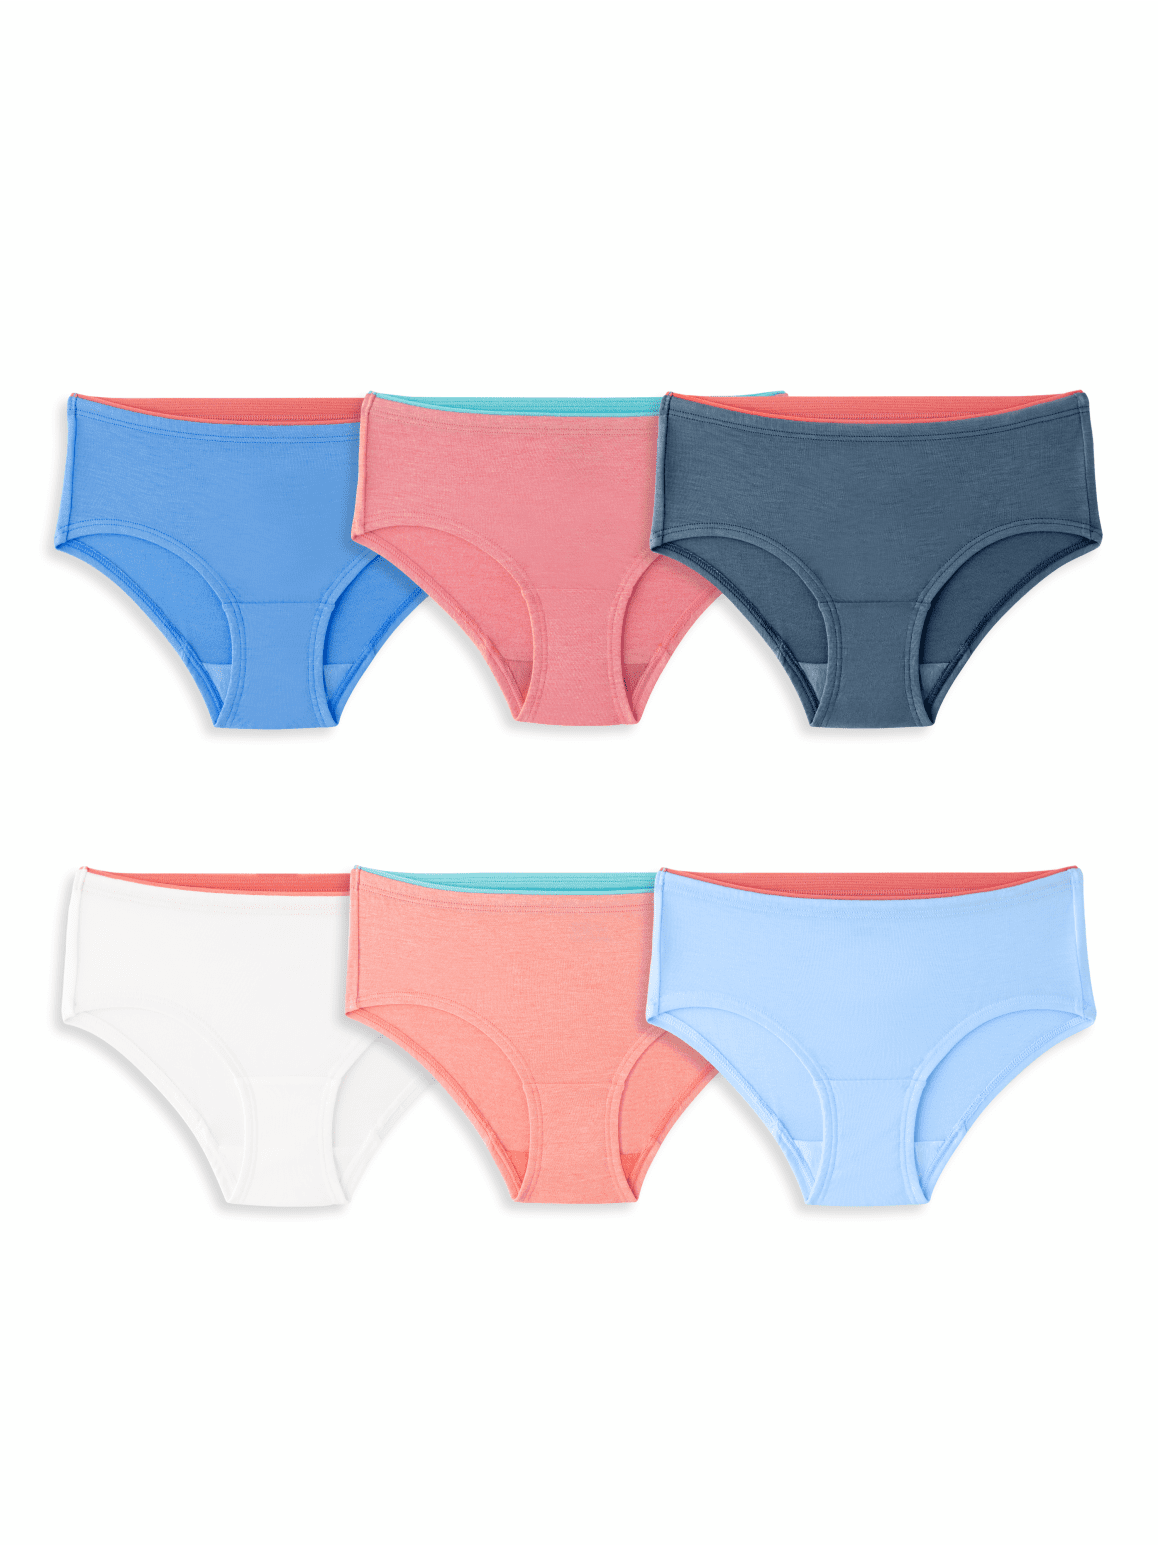 Girls' True Comfort 360 Stretch Hipster Underwear, Assorted 6 Pack